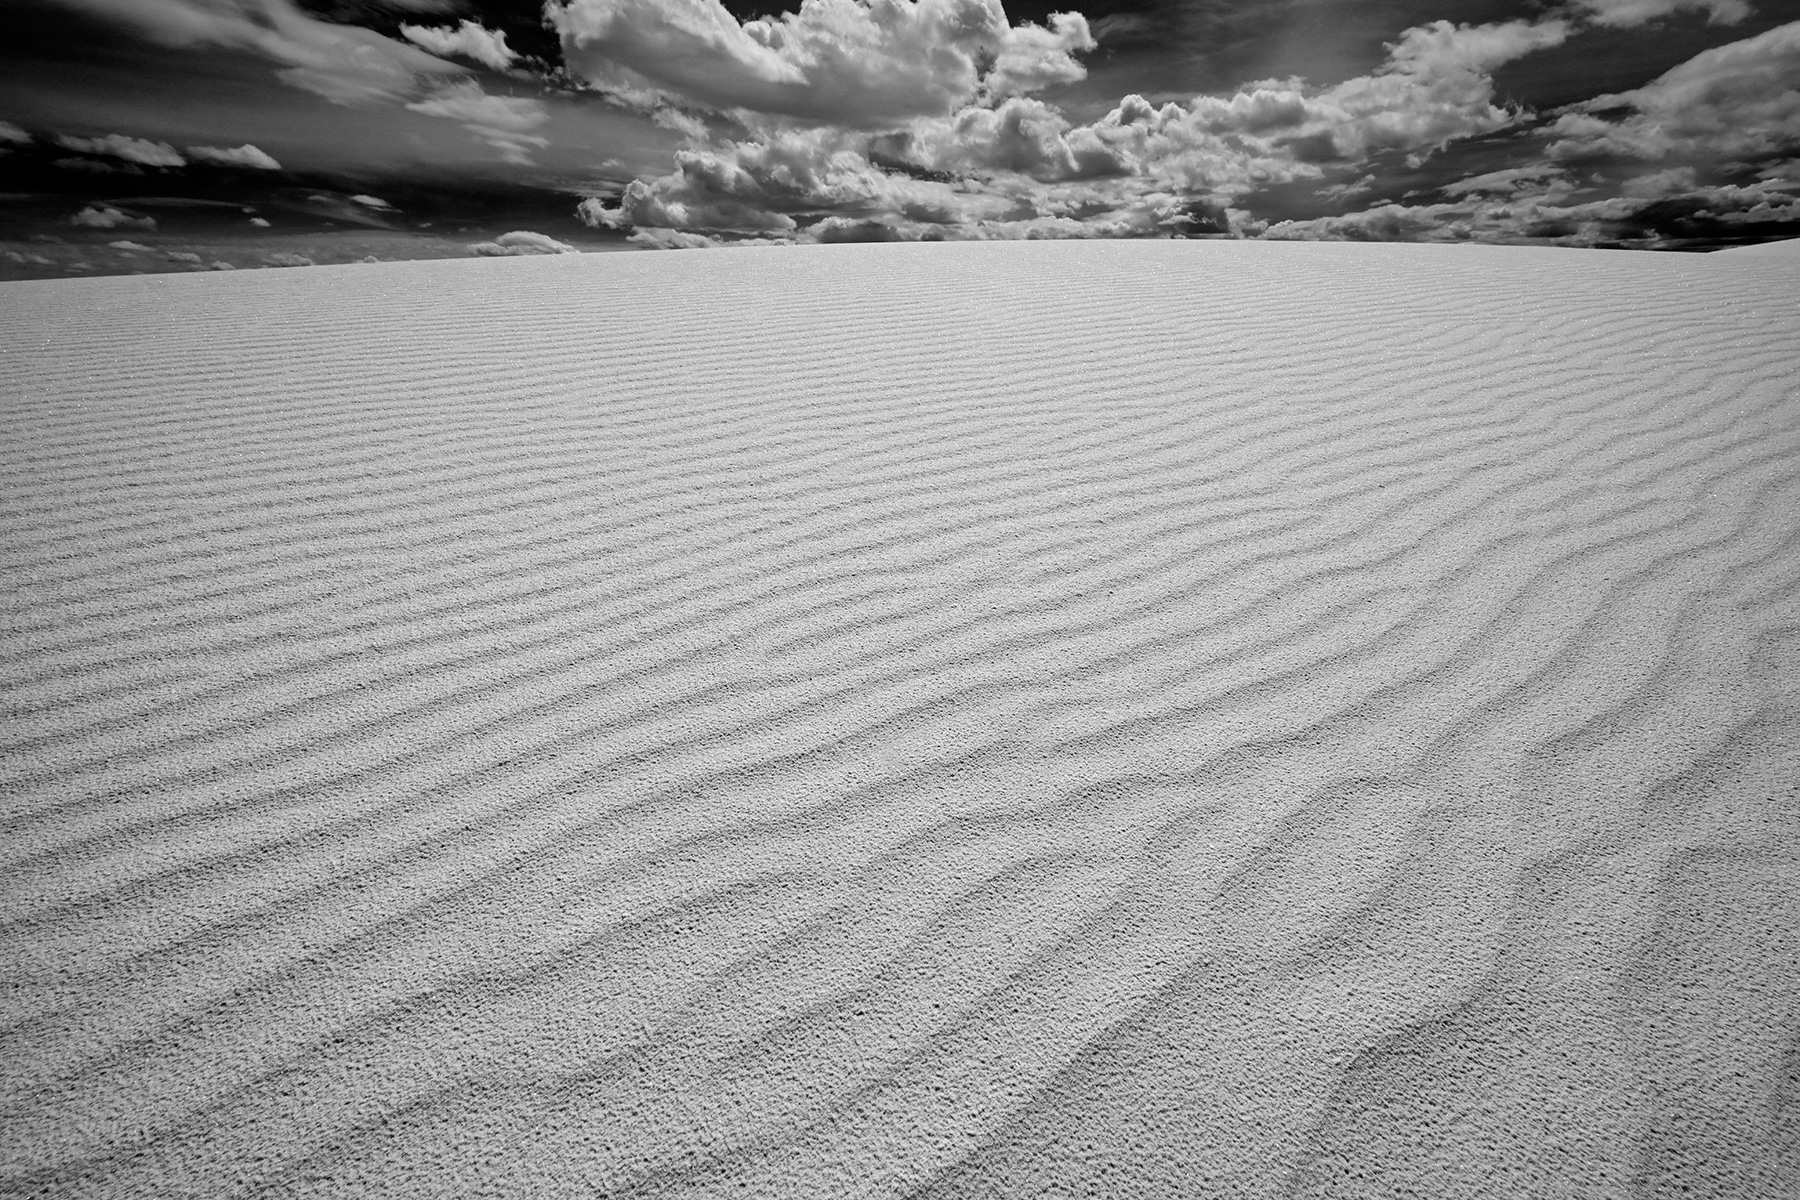 White Sands National Park (Nouveau Mexique, USA) - Détail de rides sur une dune de sable blanc avec ciel nuageux (photo noir & blanc)